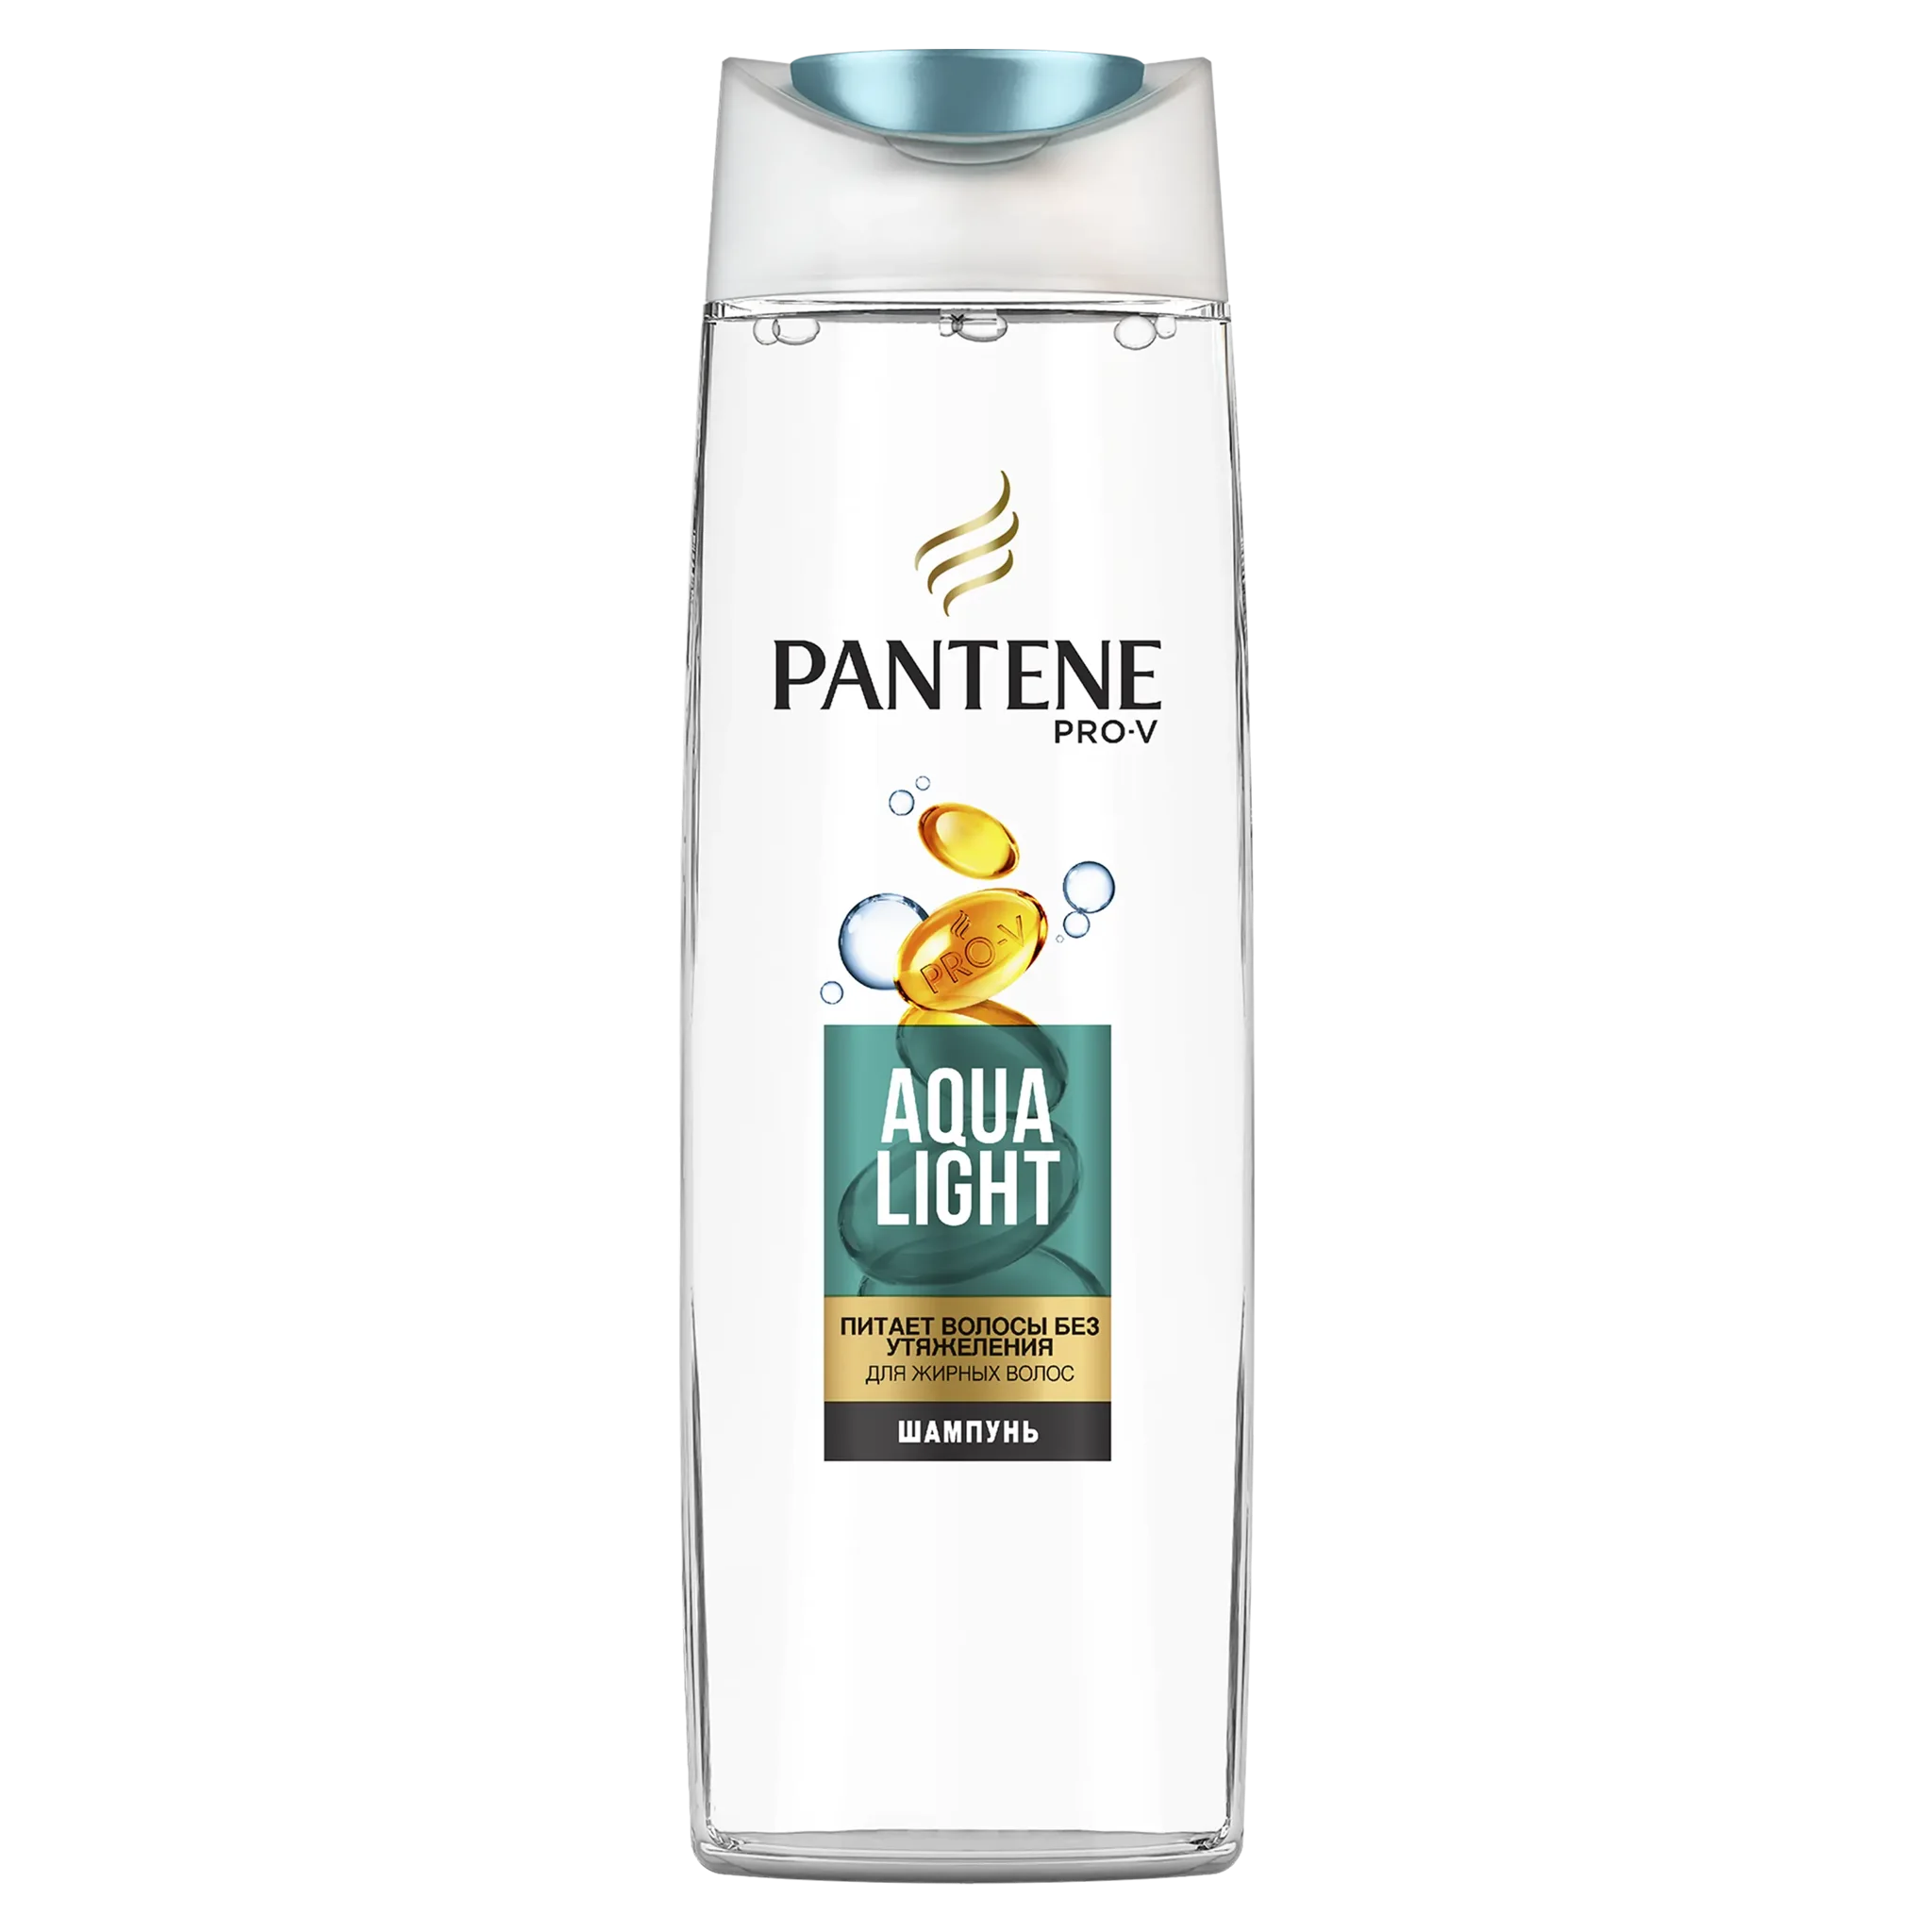 pantene pro v szampon aqua light